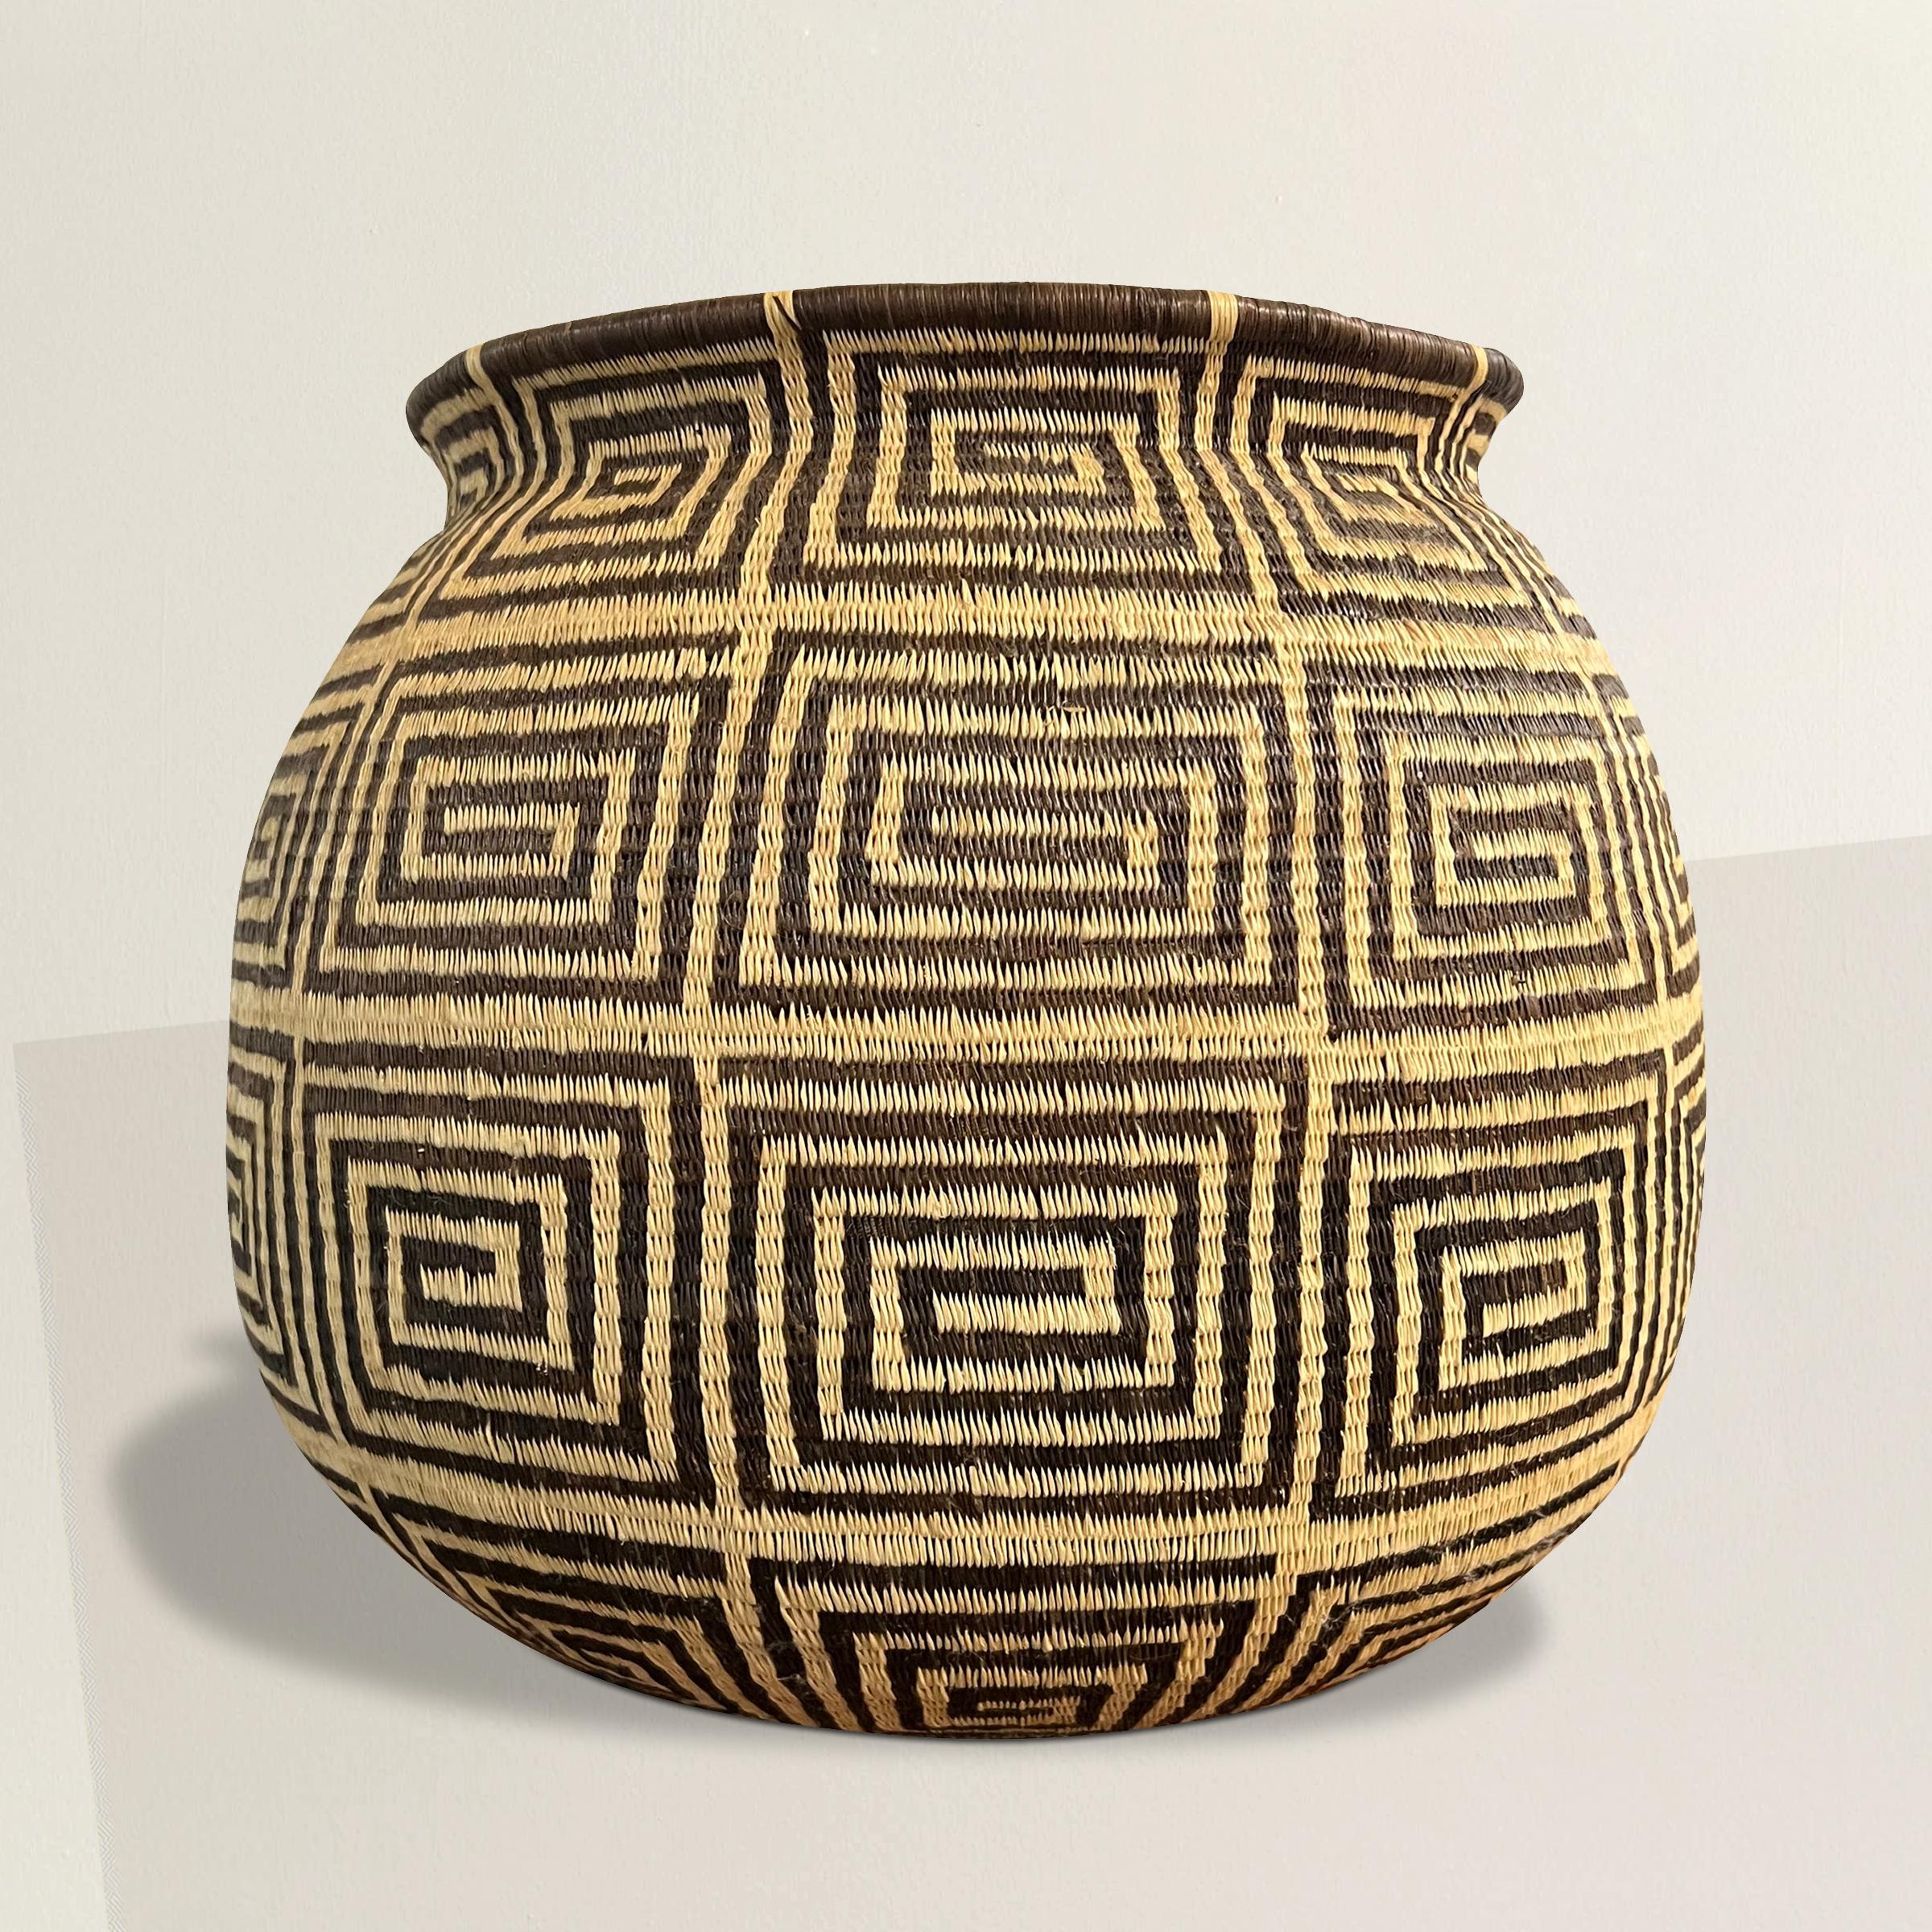 Dieser außergewöhnliche Emberá-Wounaan-Korb aus dem 20. Jahrhundert ist ein Zeugnis für die bemerkenswerte Handwerkskunst des indigenen Volkes der Emberá-Wounaan in Panama und Kolumbien. Mit unvergleichlicher Kunstfertigkeit aus natürlichen